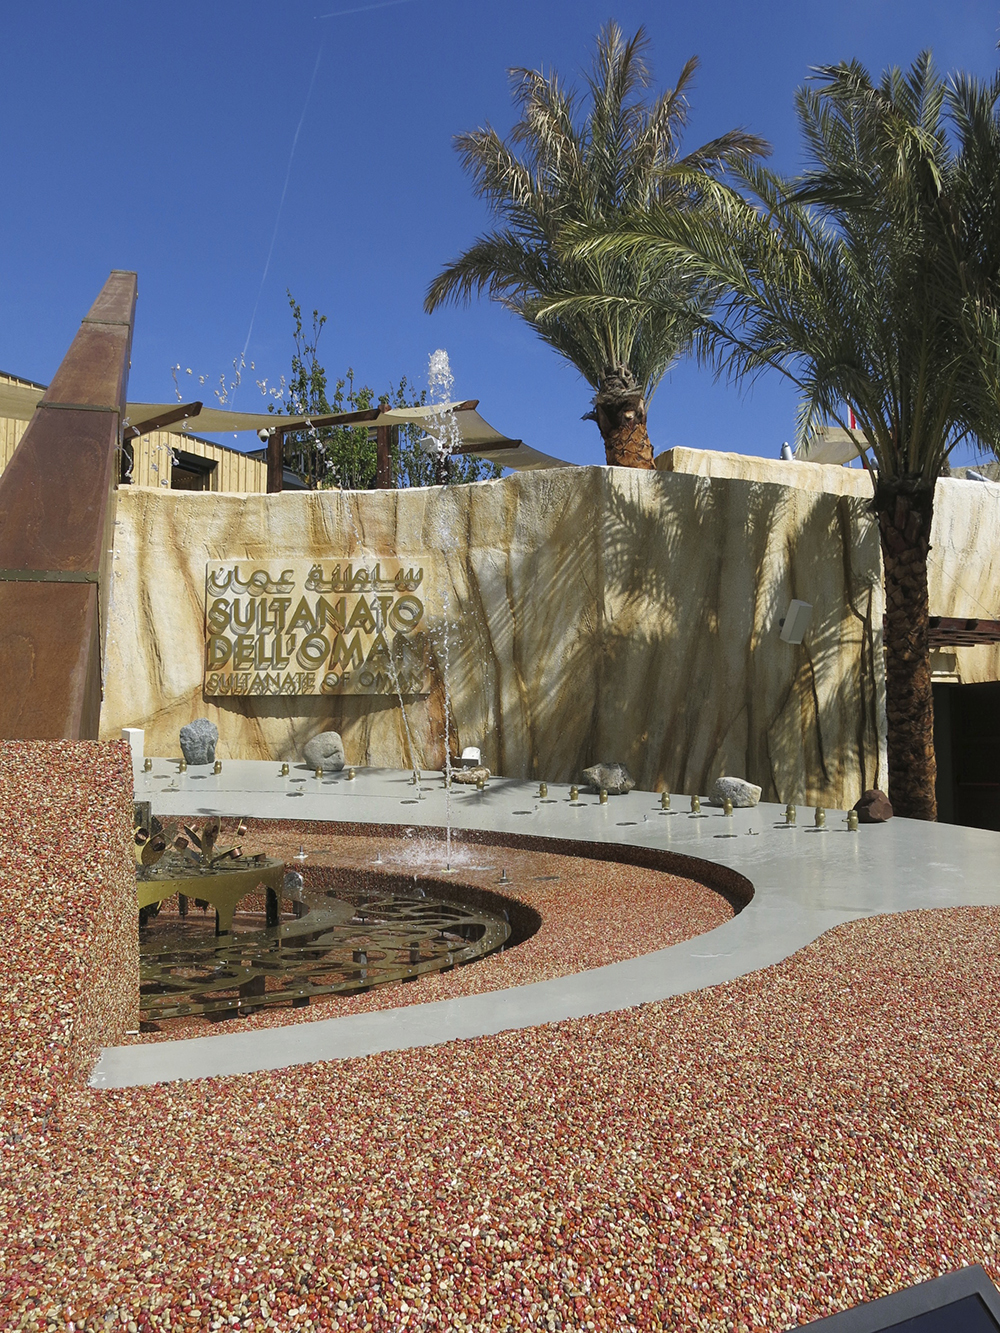 Oman's pavilion at Milan Expo